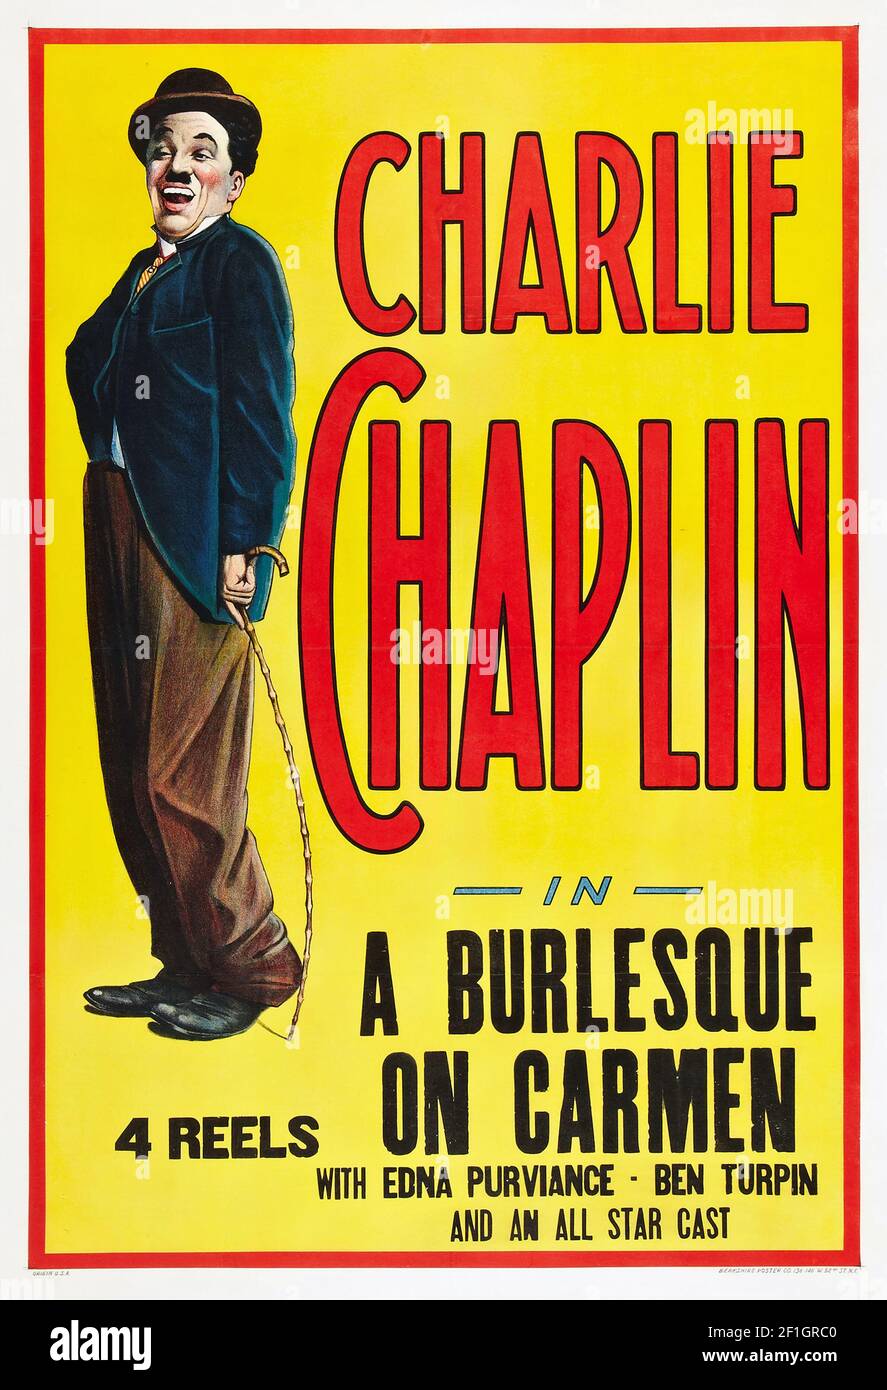 Charlie Chaplin en burlesque en Carmen con Edna Pruviance y Ben Turpin. Comedia / Película silenciosa. Foto de stock